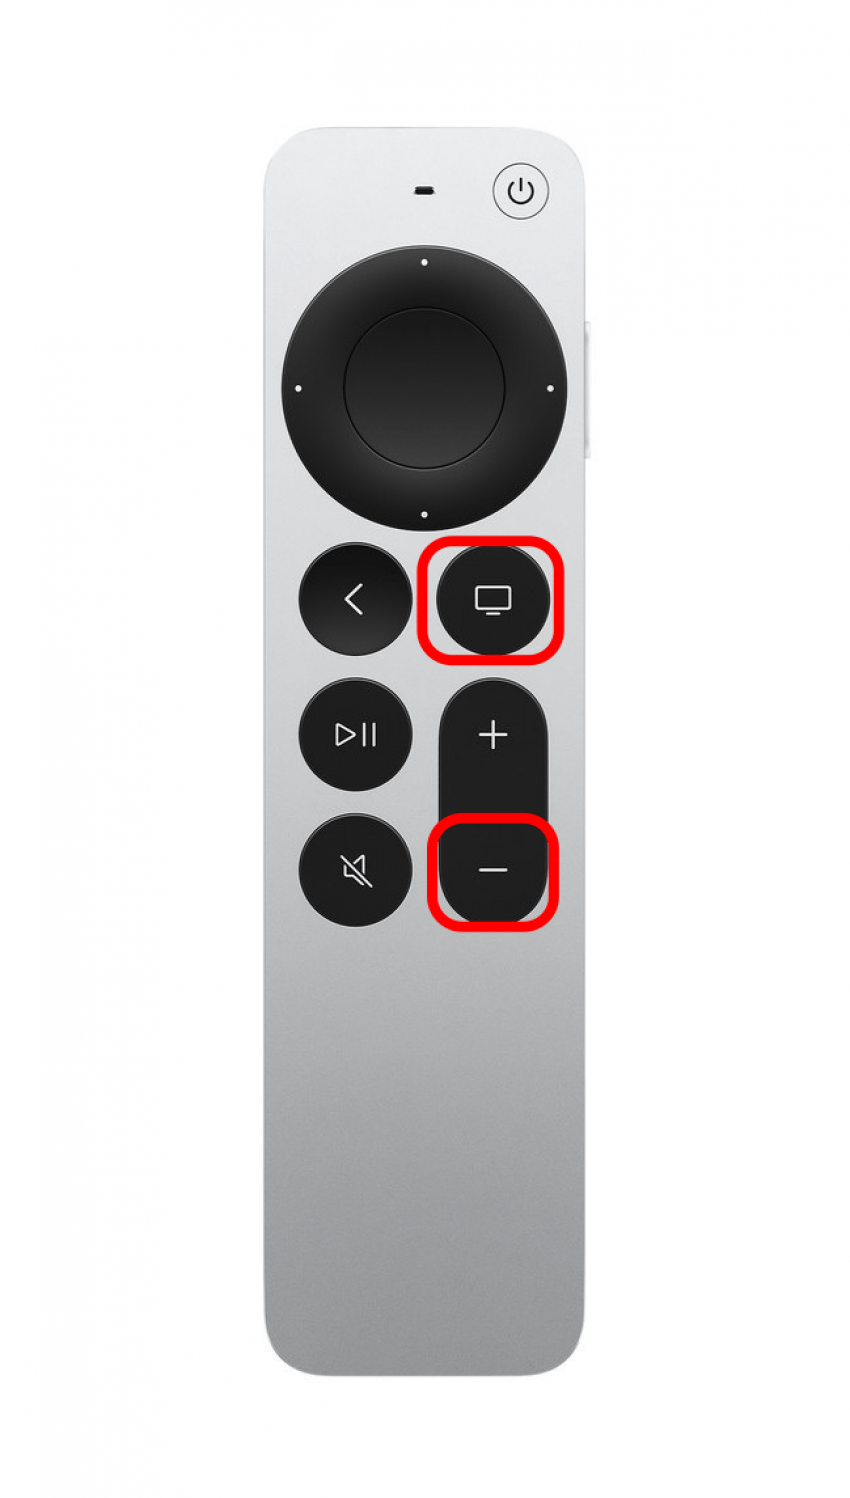 Halten Sie gleichzeitig die TV-Taste und die Leiser-Taste etwa fünf Sekunden lang gedrückt.